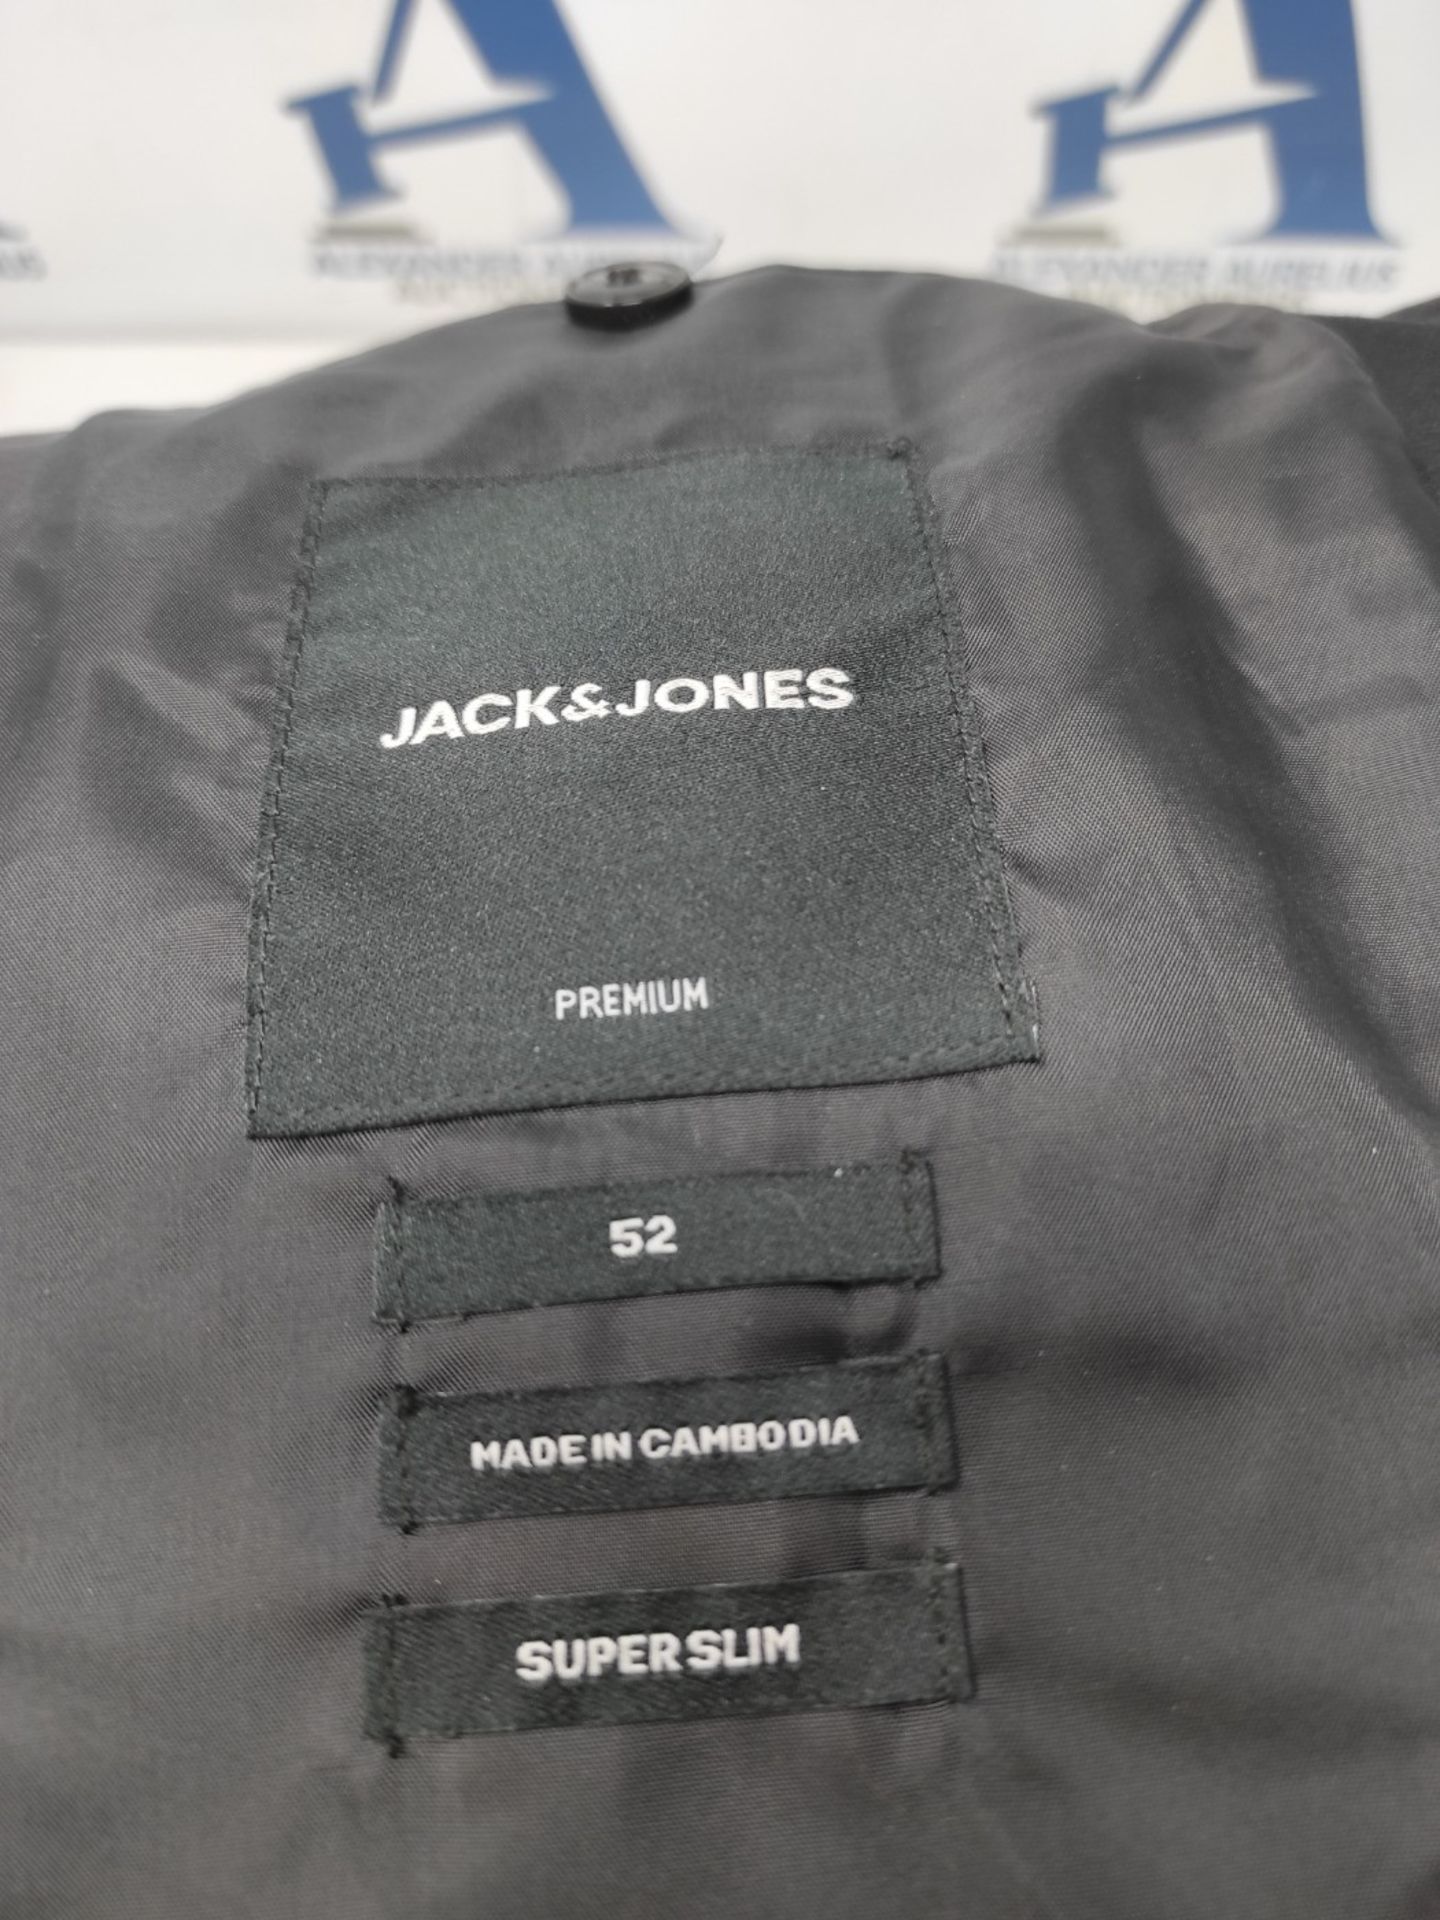 Jack & Jones Men Jprfranco Blazer Noos Business Jacket, Black, 52 EU - Image 3 of 3